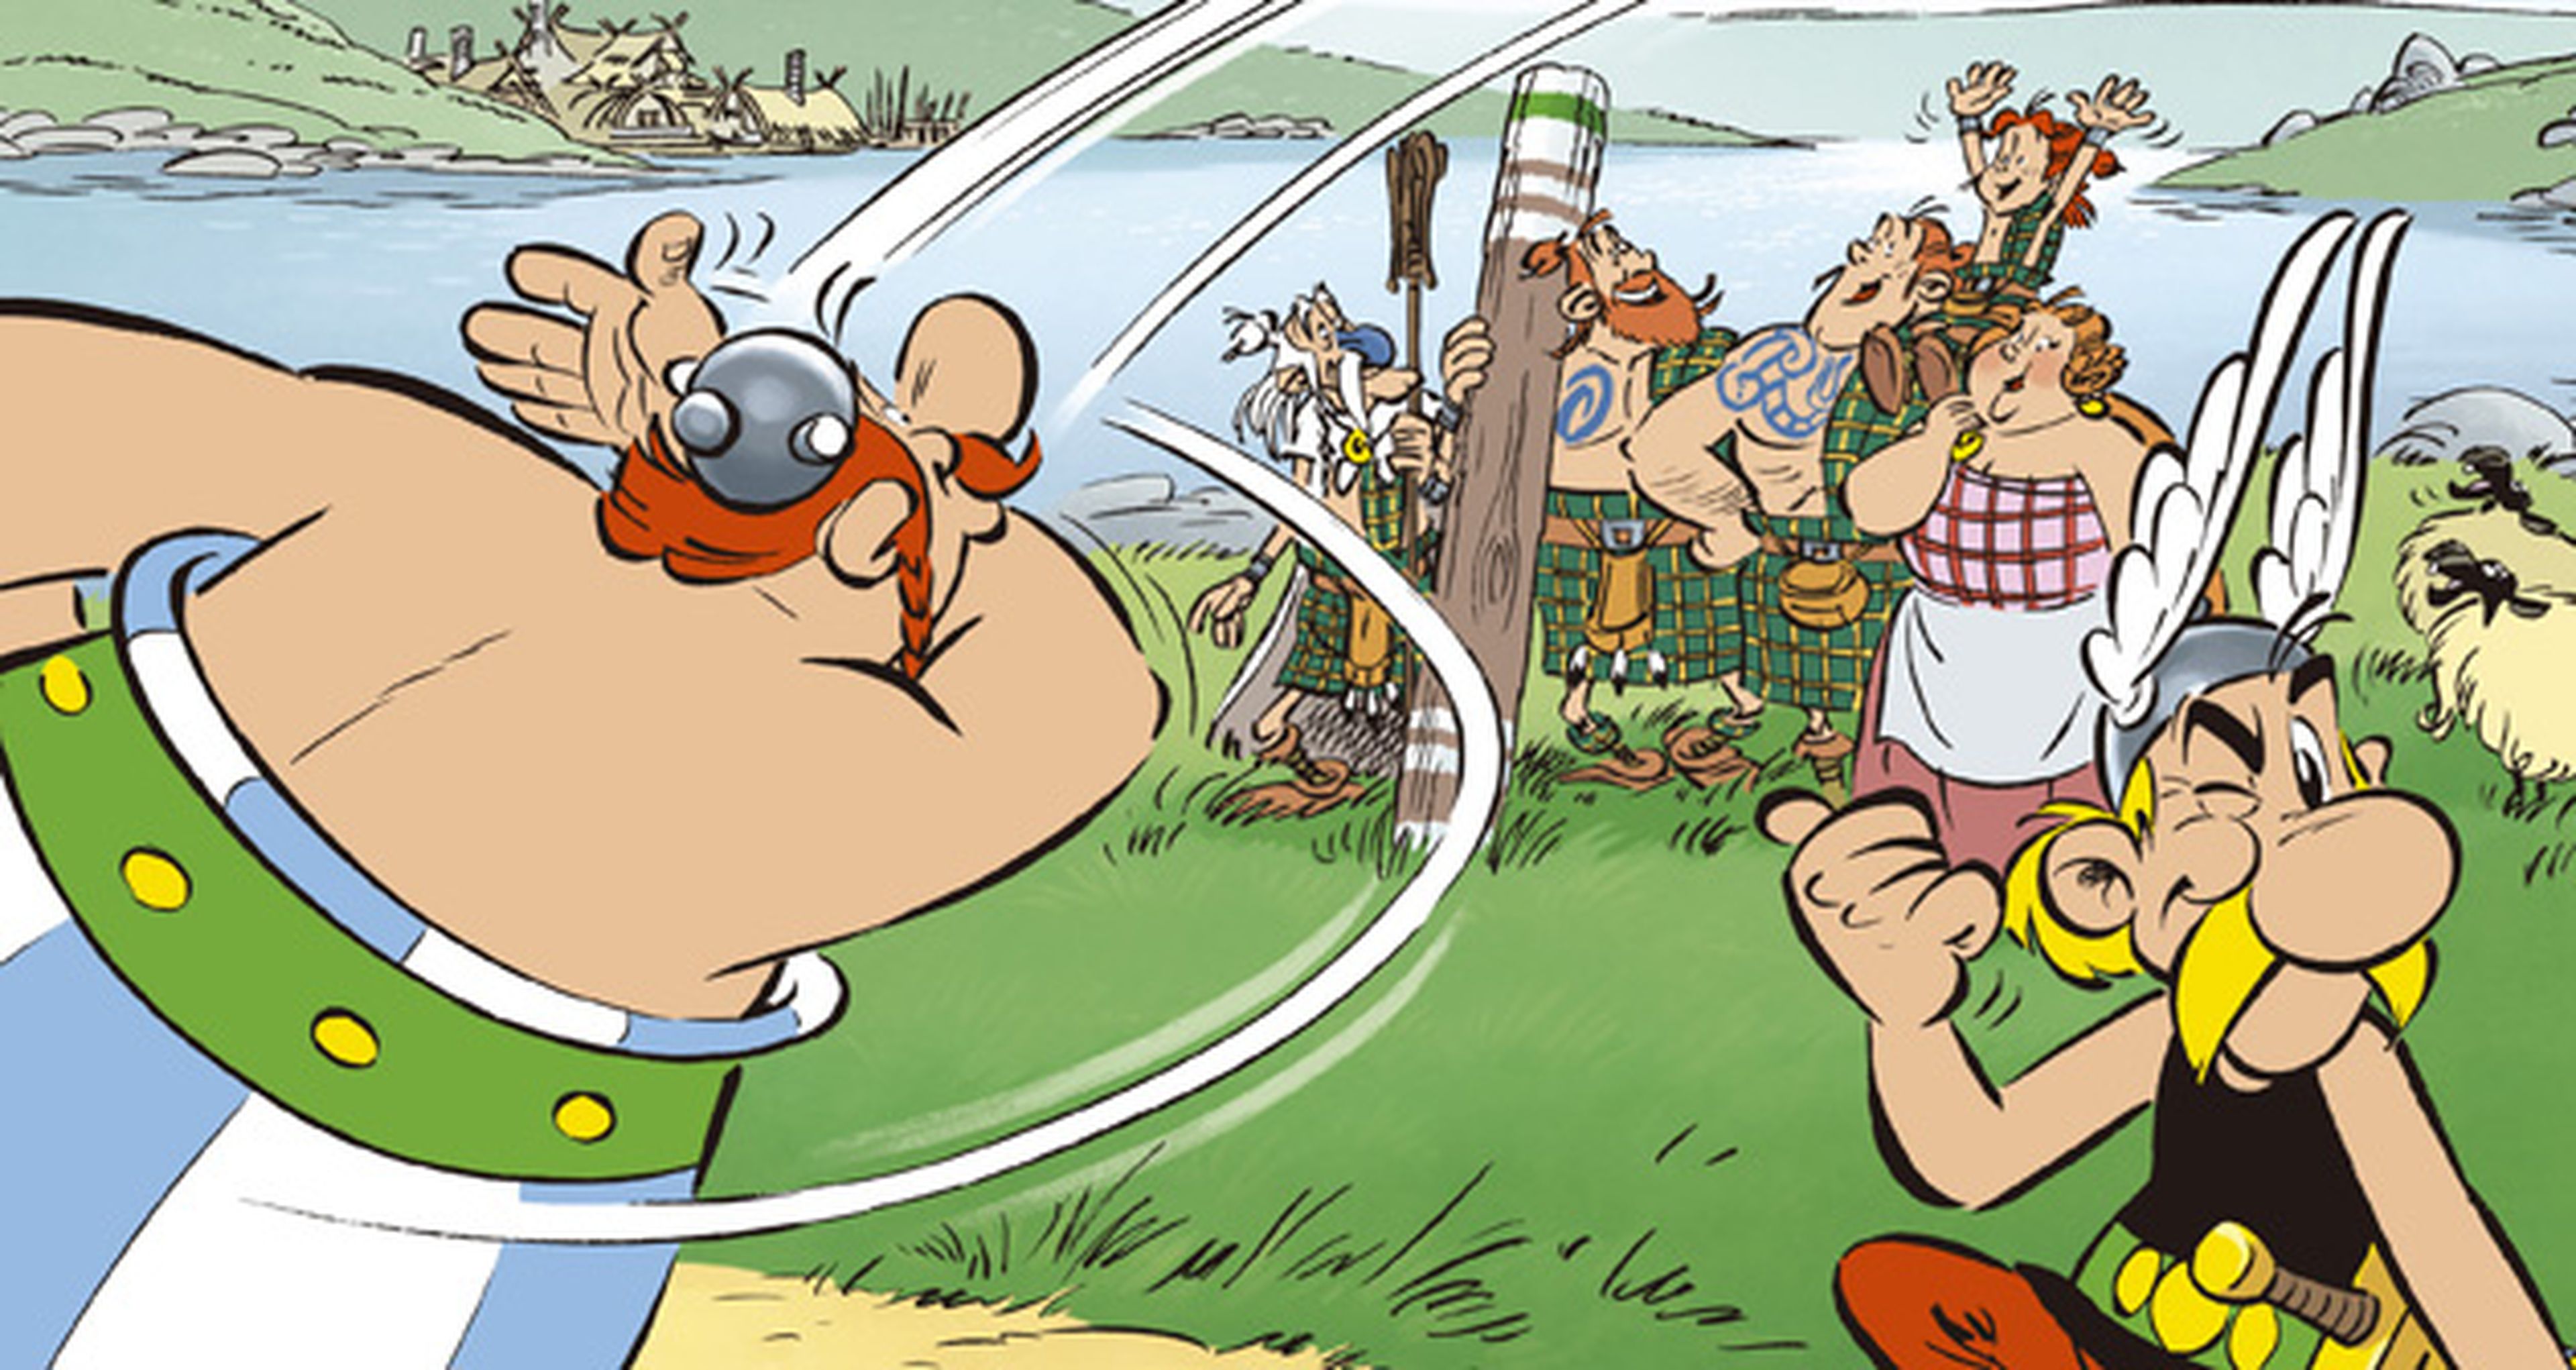 Asterix y los Pictos sale mañana a la venta